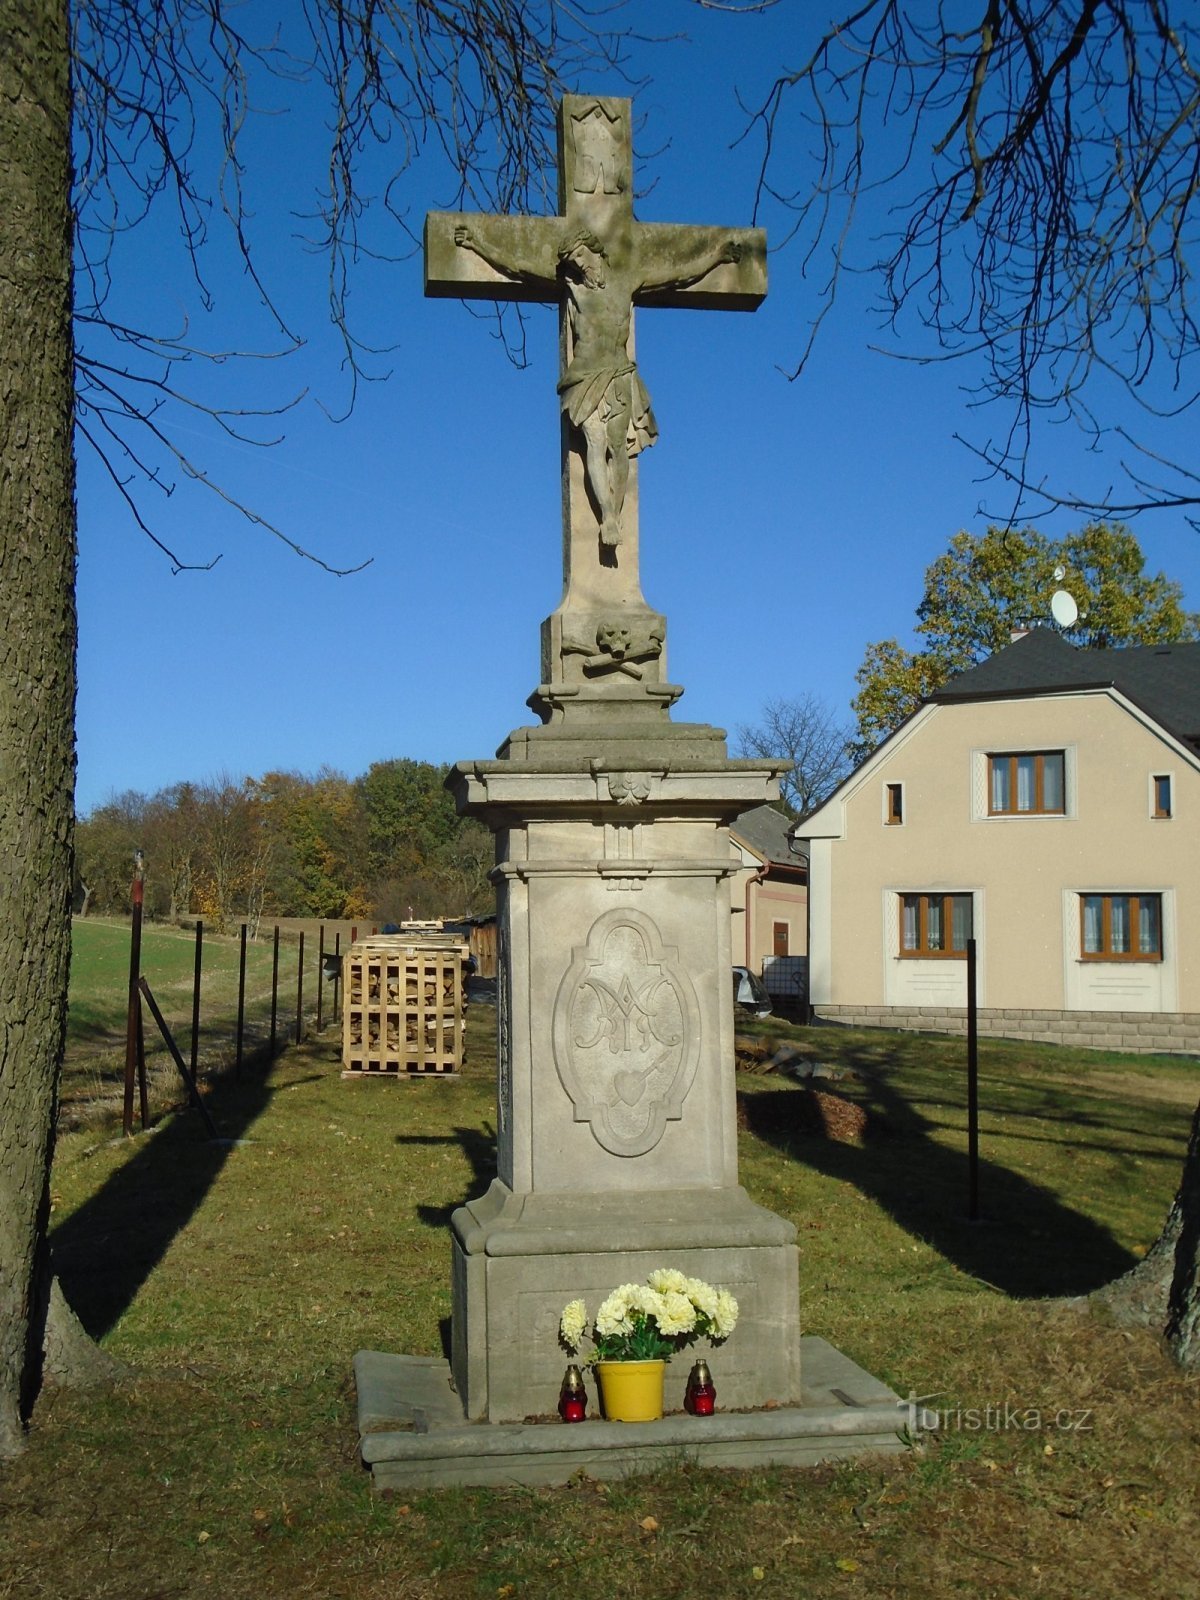 Stenen kruis bij het parket (Slatina nad Úpou, 31.10.2018/XNUMX/XNUMX)